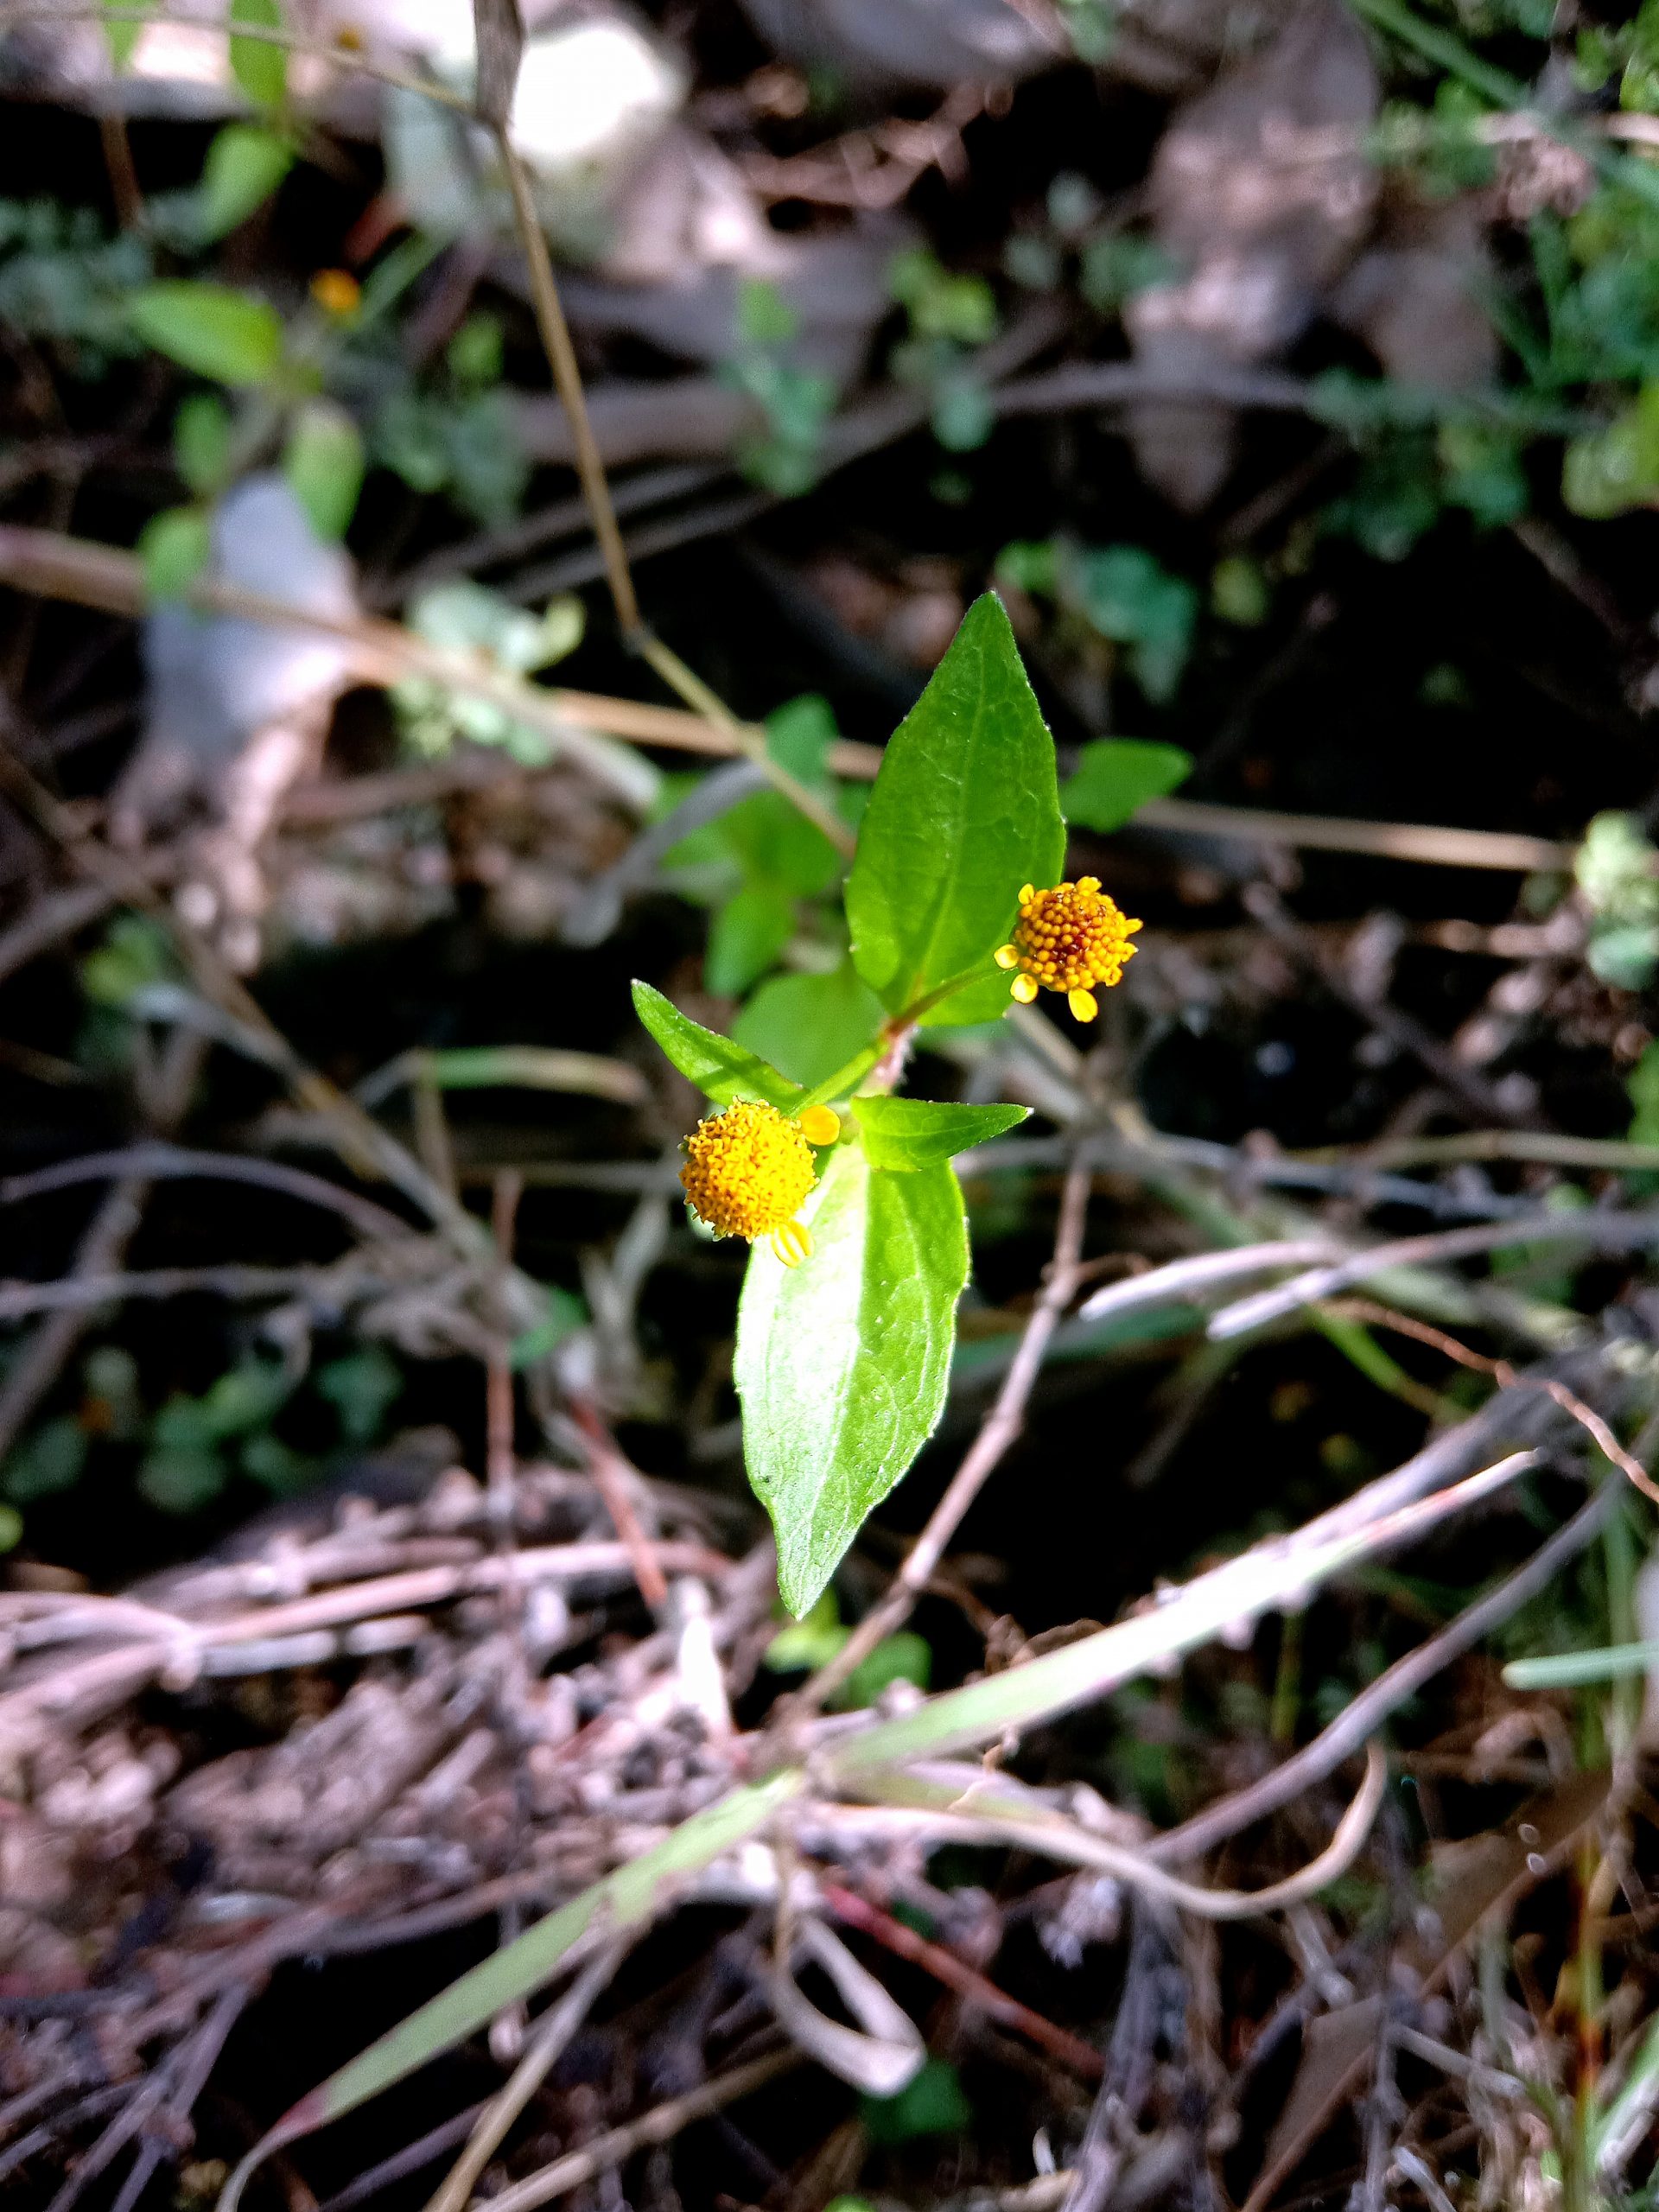 Tiny Yellow flowers